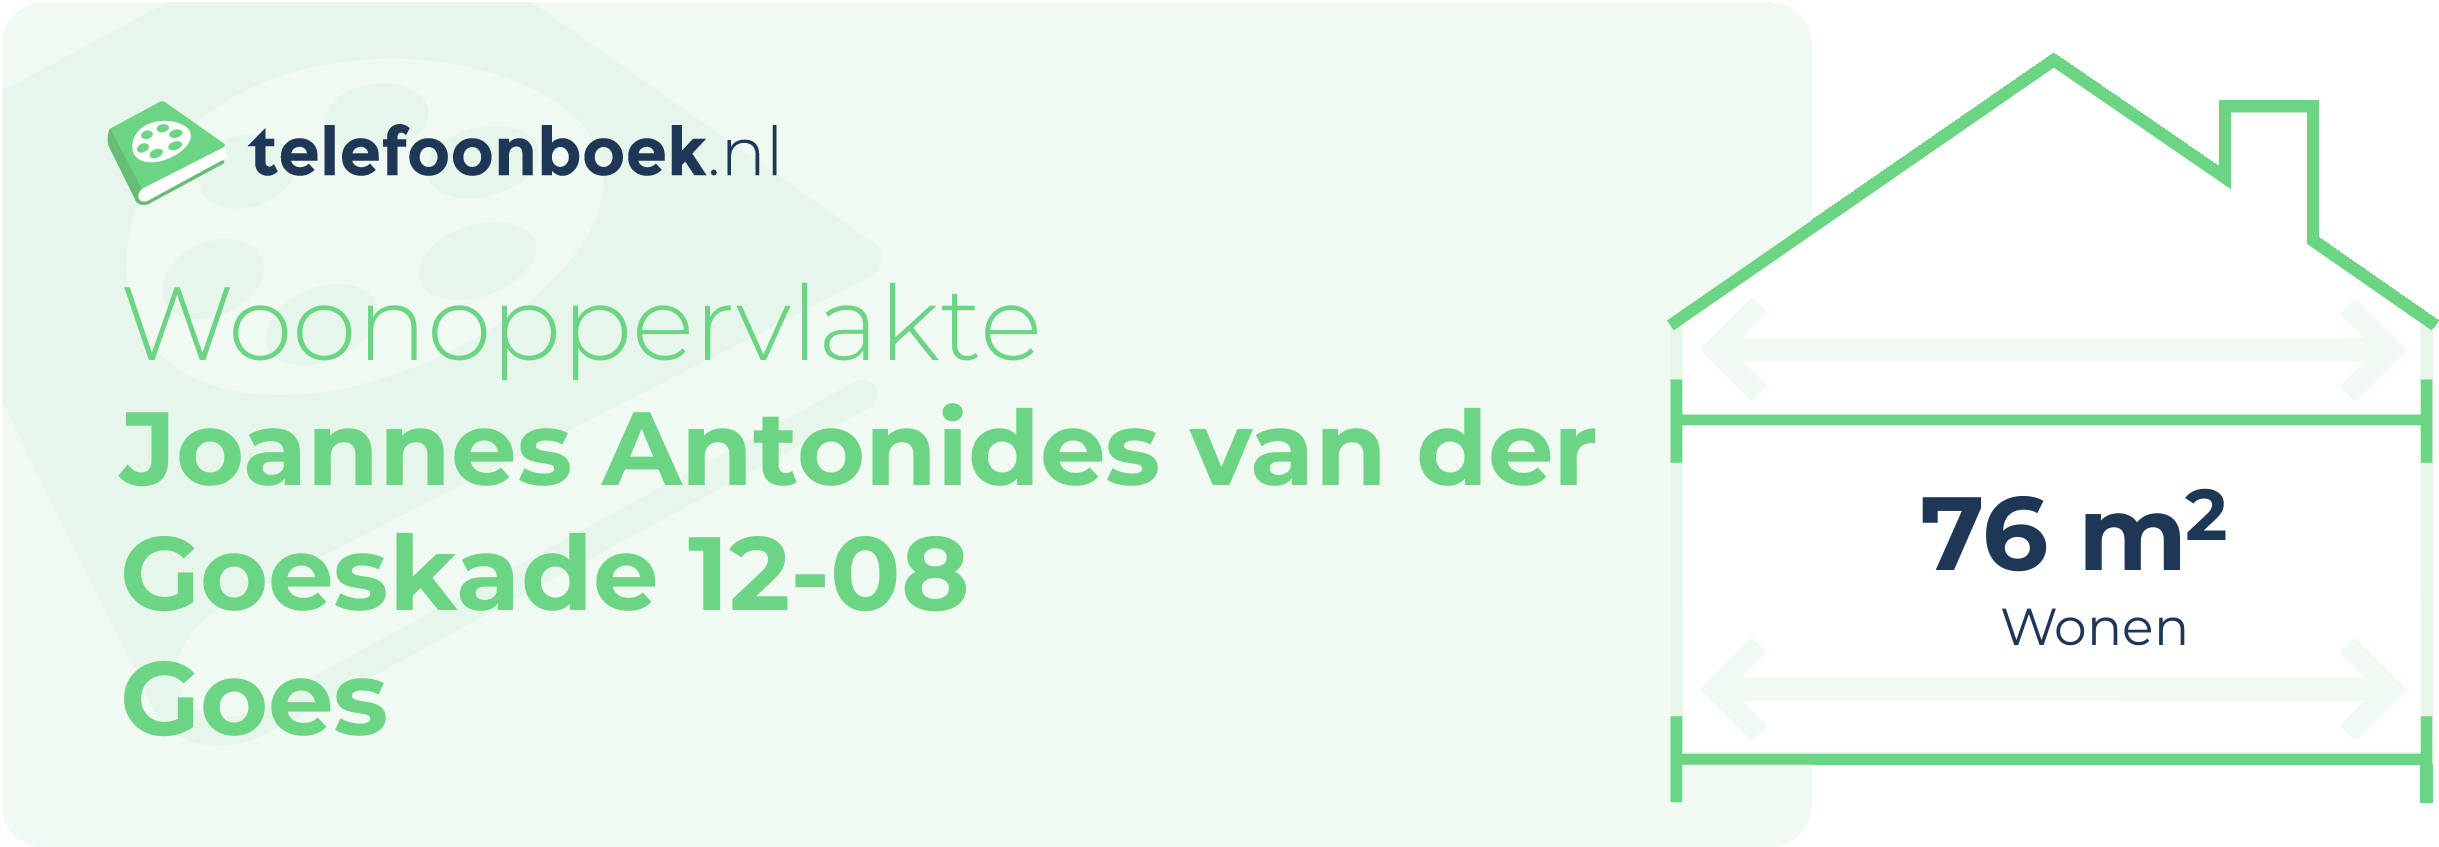 Woonoppervlakte Joannes Antonides Van Der Goeskade 12-08 Goes